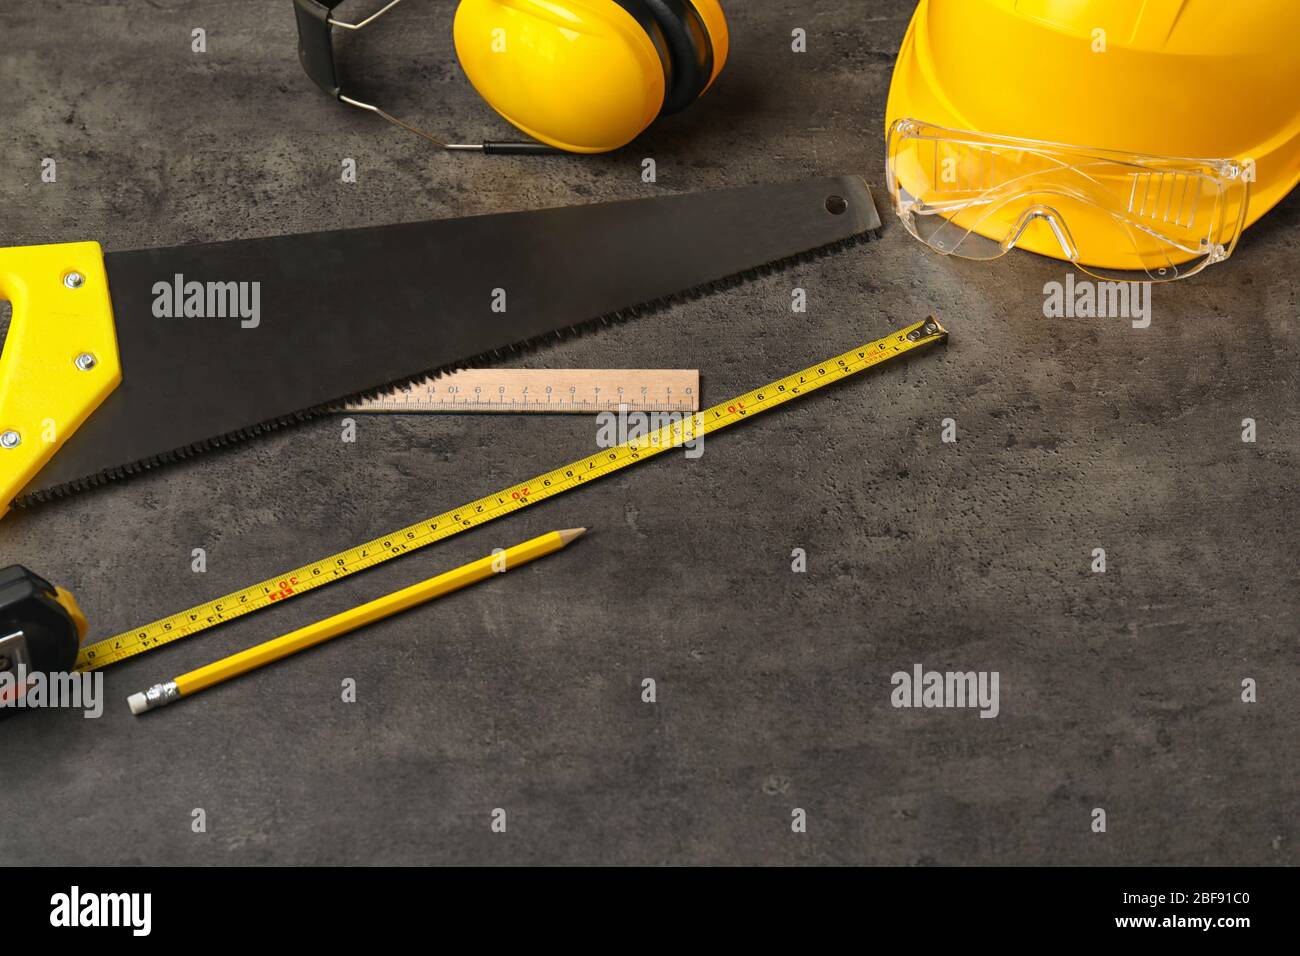 Builder's supplies on dark background Stock Photo